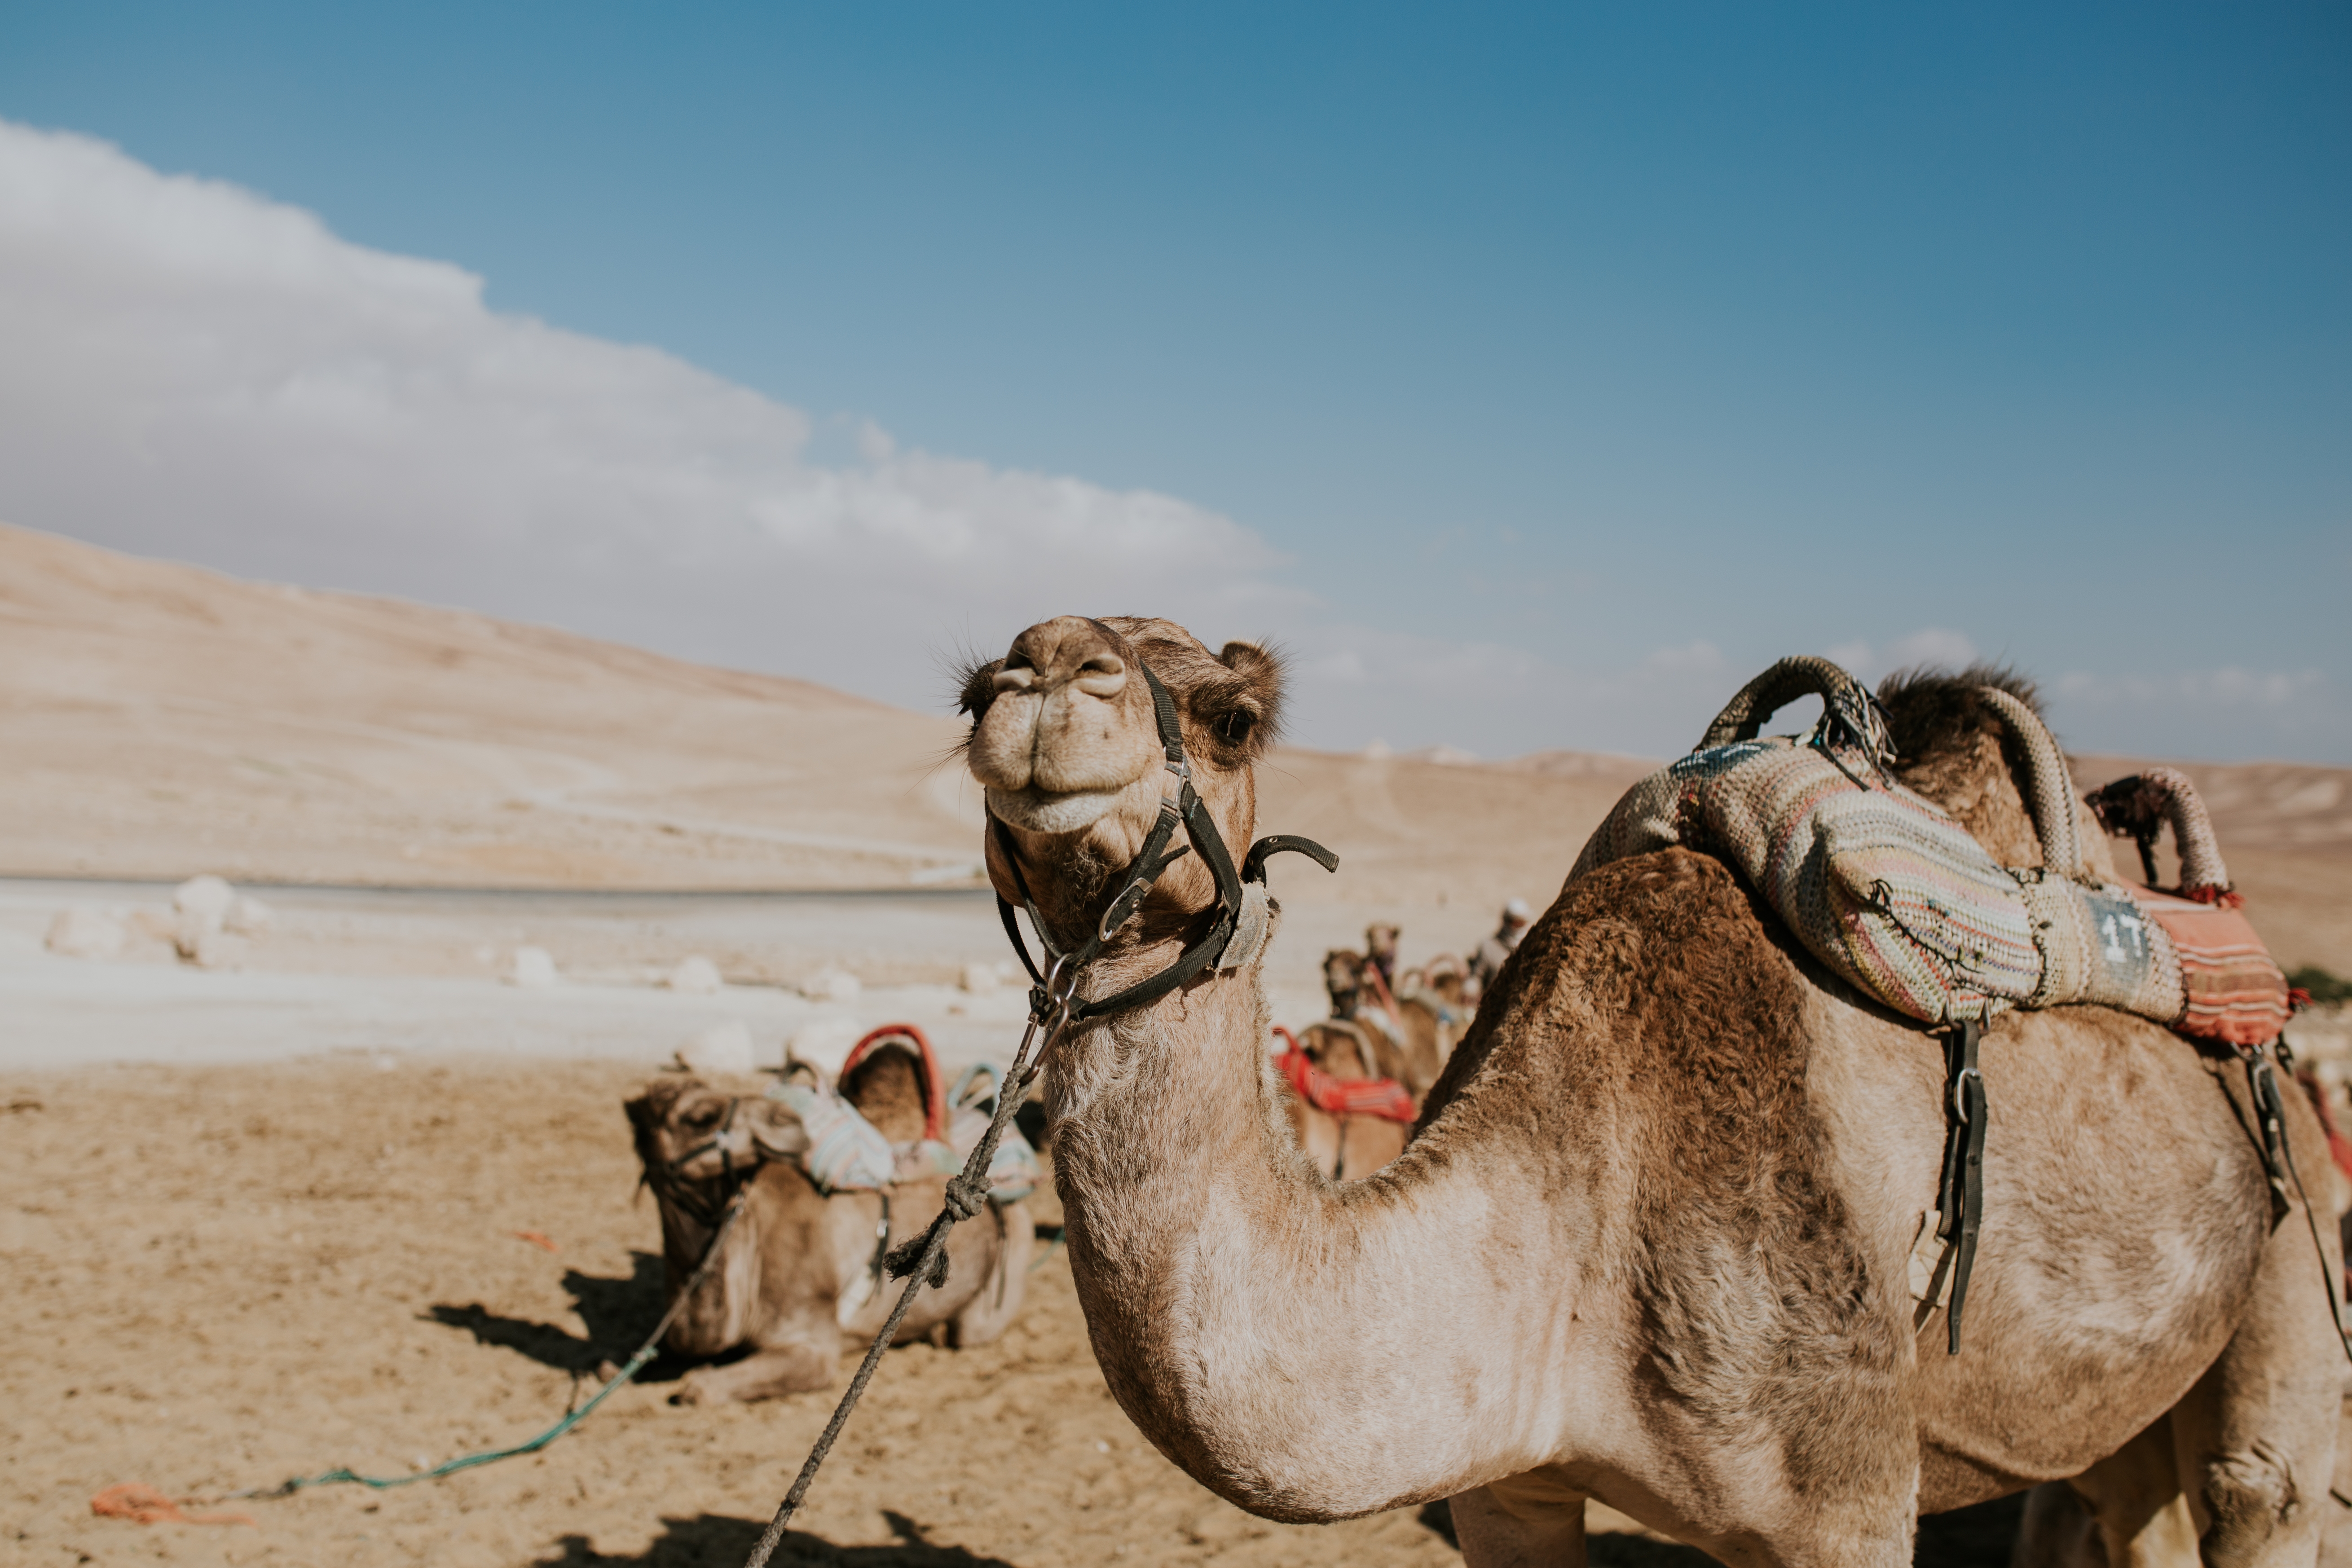 camel-leash-tourists-egypt.jpg